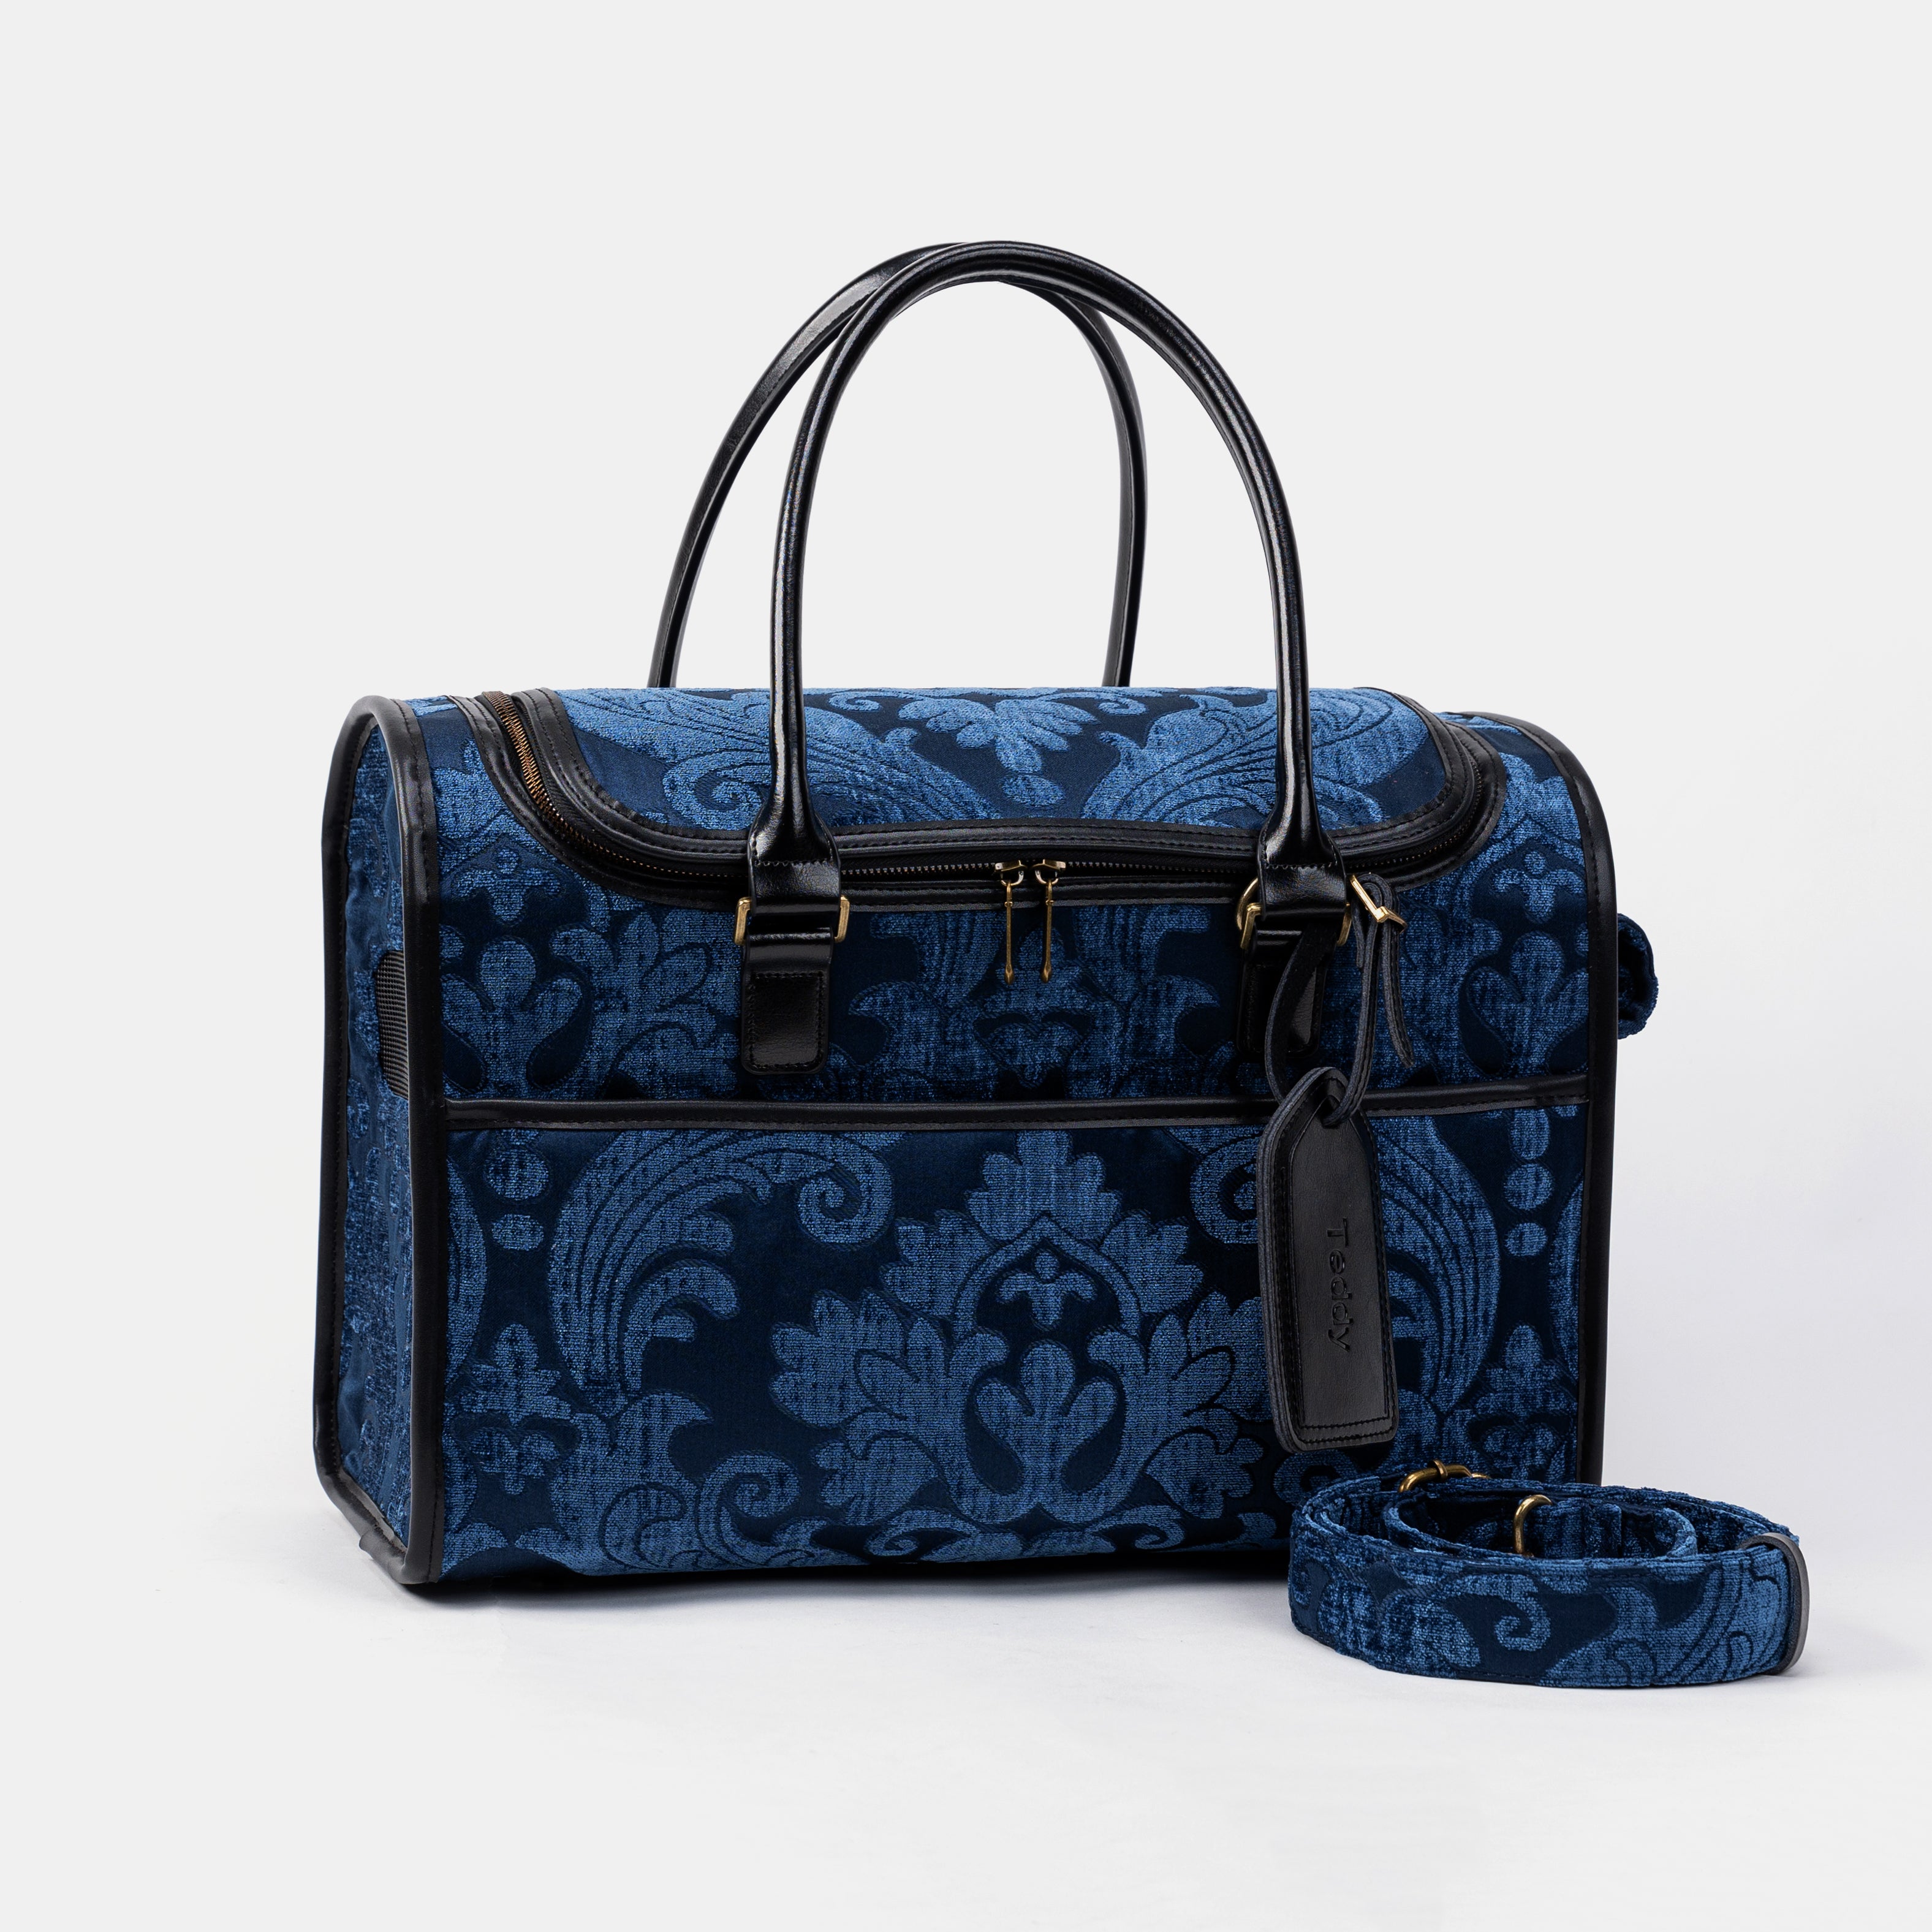 Travel Dog Carrier Bag Queen Royal Blue Shoulder Strap